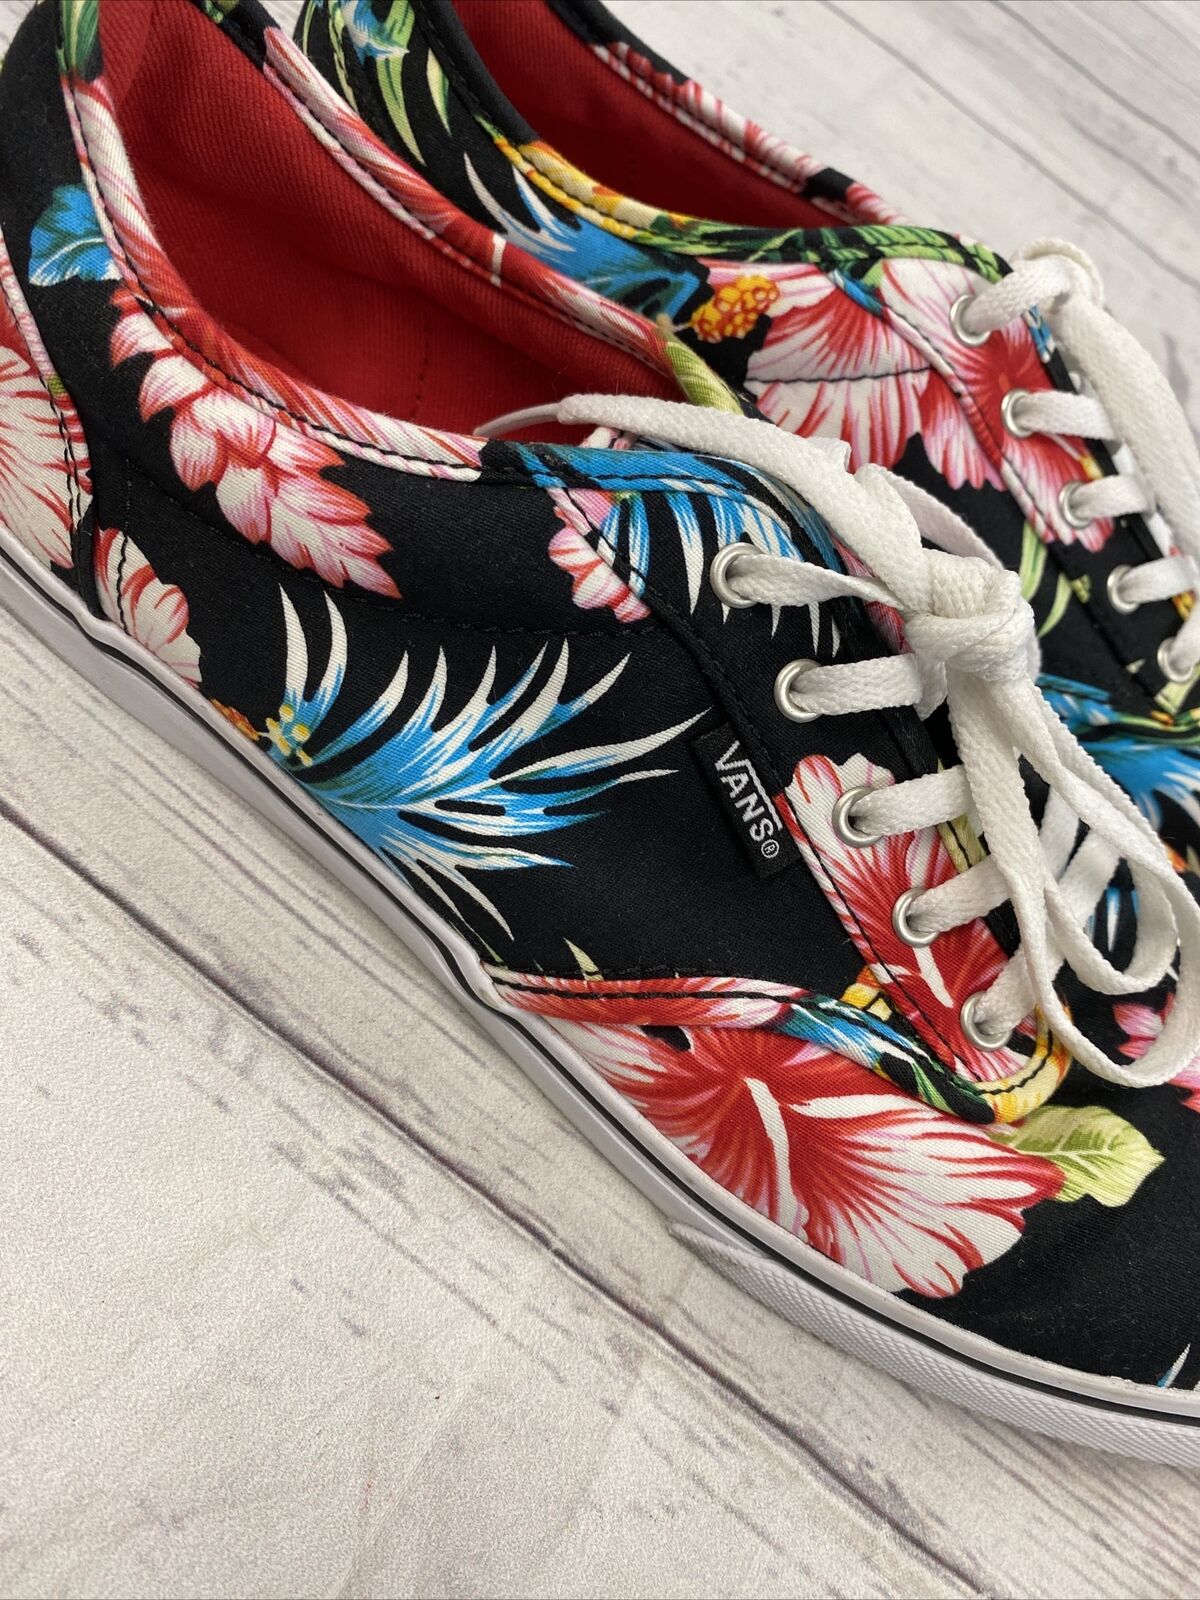 VANS 5000200 Hawaiian Tropical Floral Lace Shoes Women's Size -